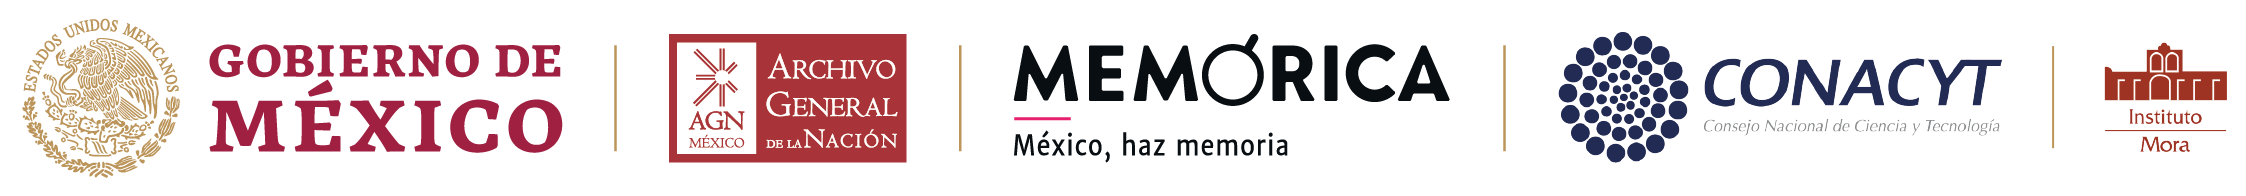 Logotipo Conacyt, Instituto Mora